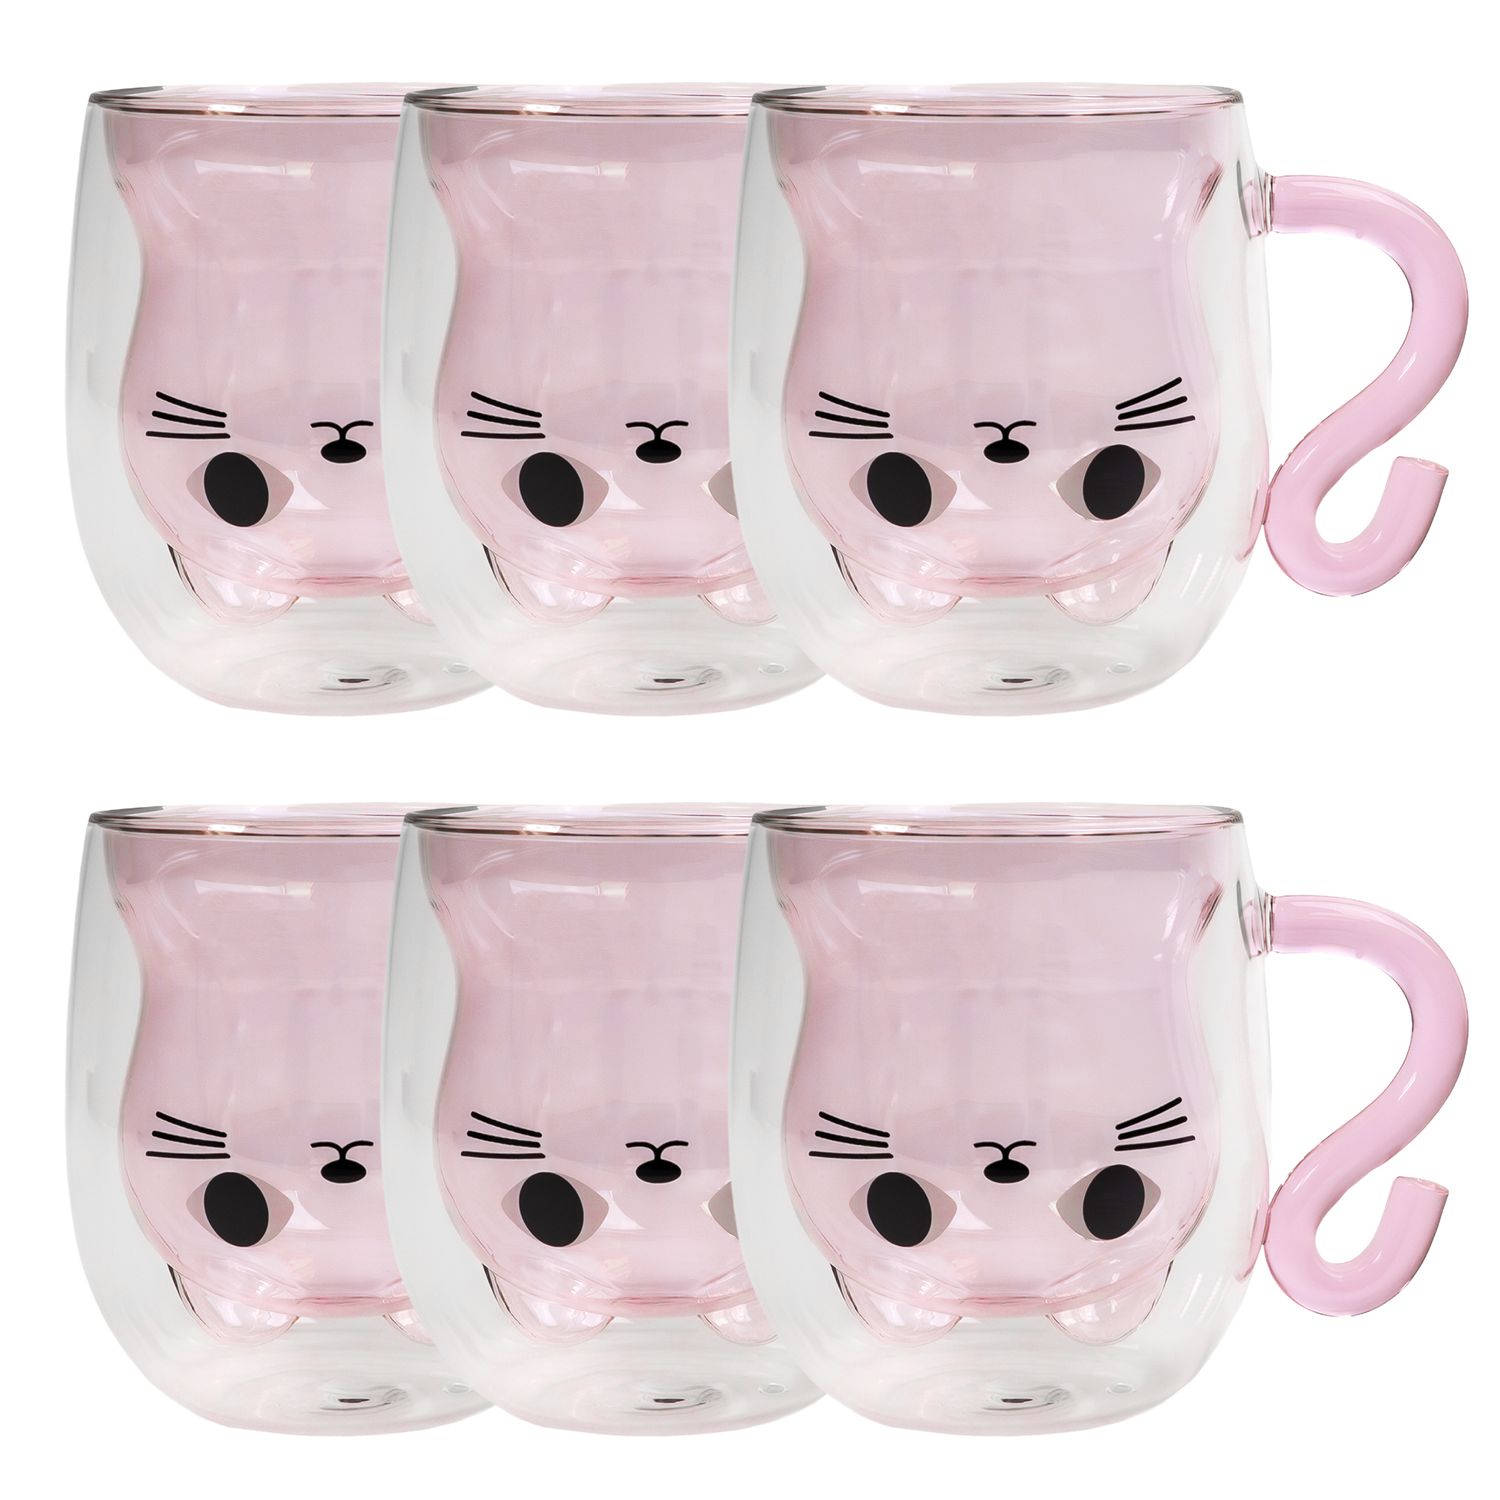 Intirilife 6x dubbelwandig thermo thee koffie glas met design kat in roze - 200ml inhoud - geïsoleerde glazen mok